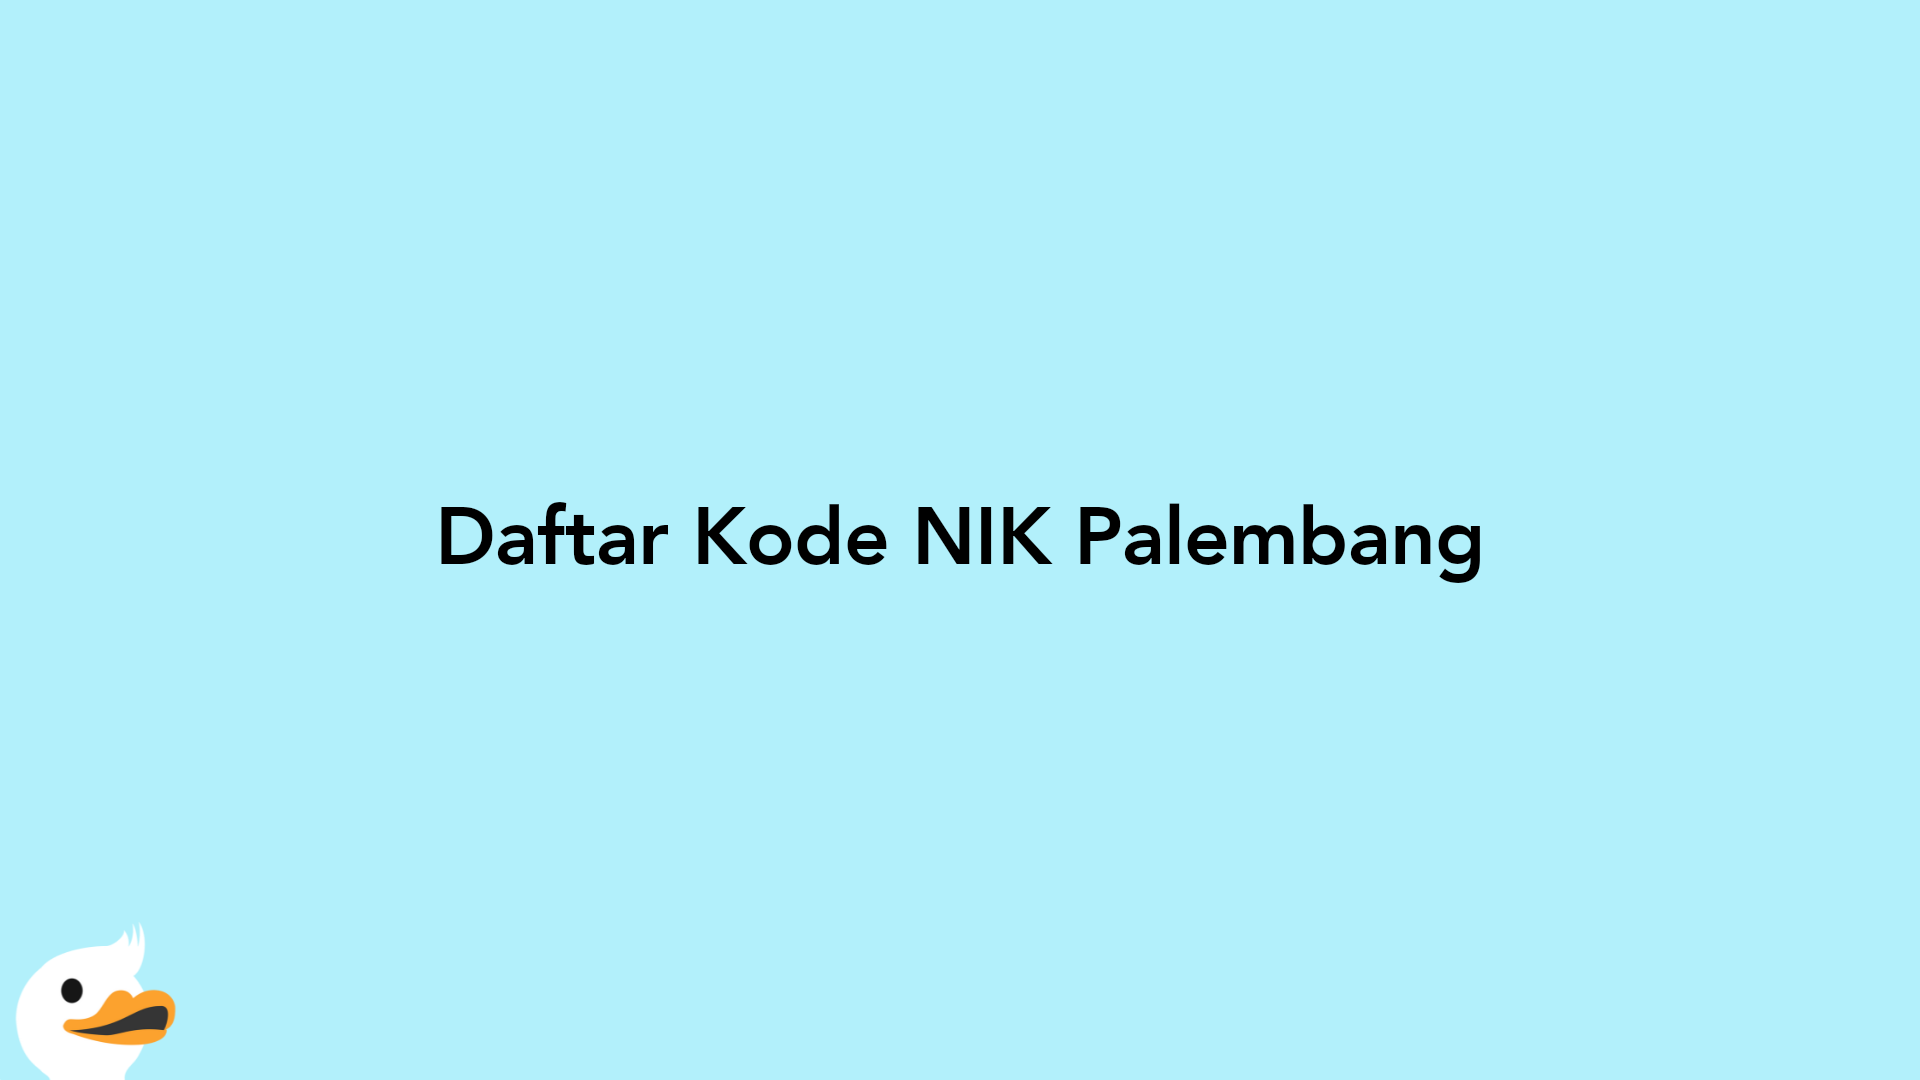 Daftar Kode NIK Palembang